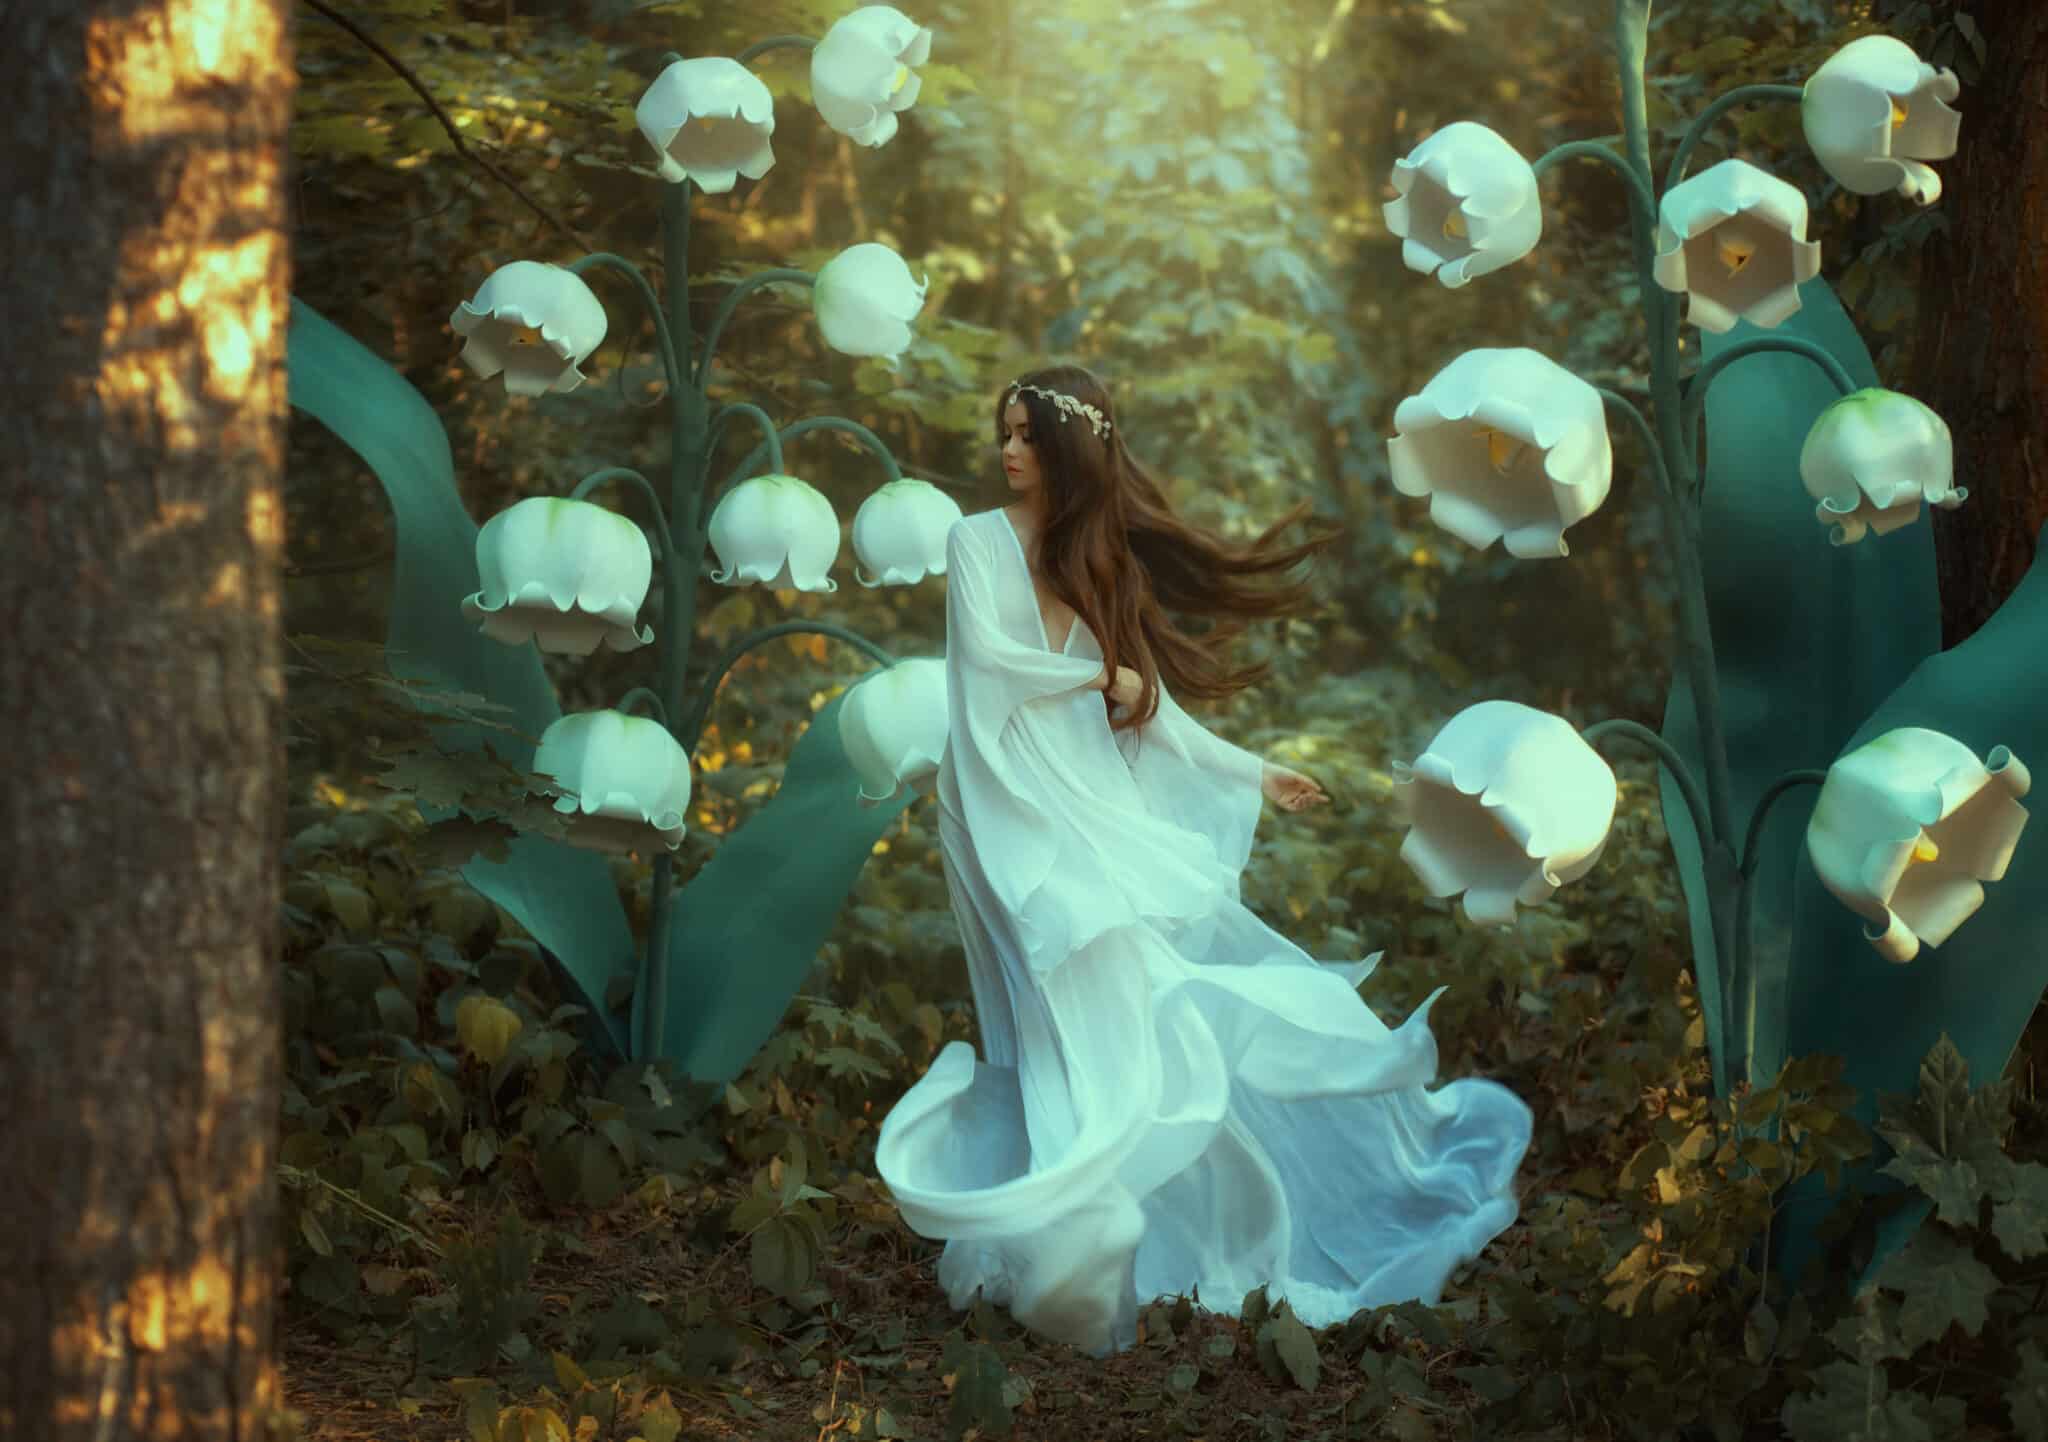 A beautiful lady elf walks in a fantasy forest